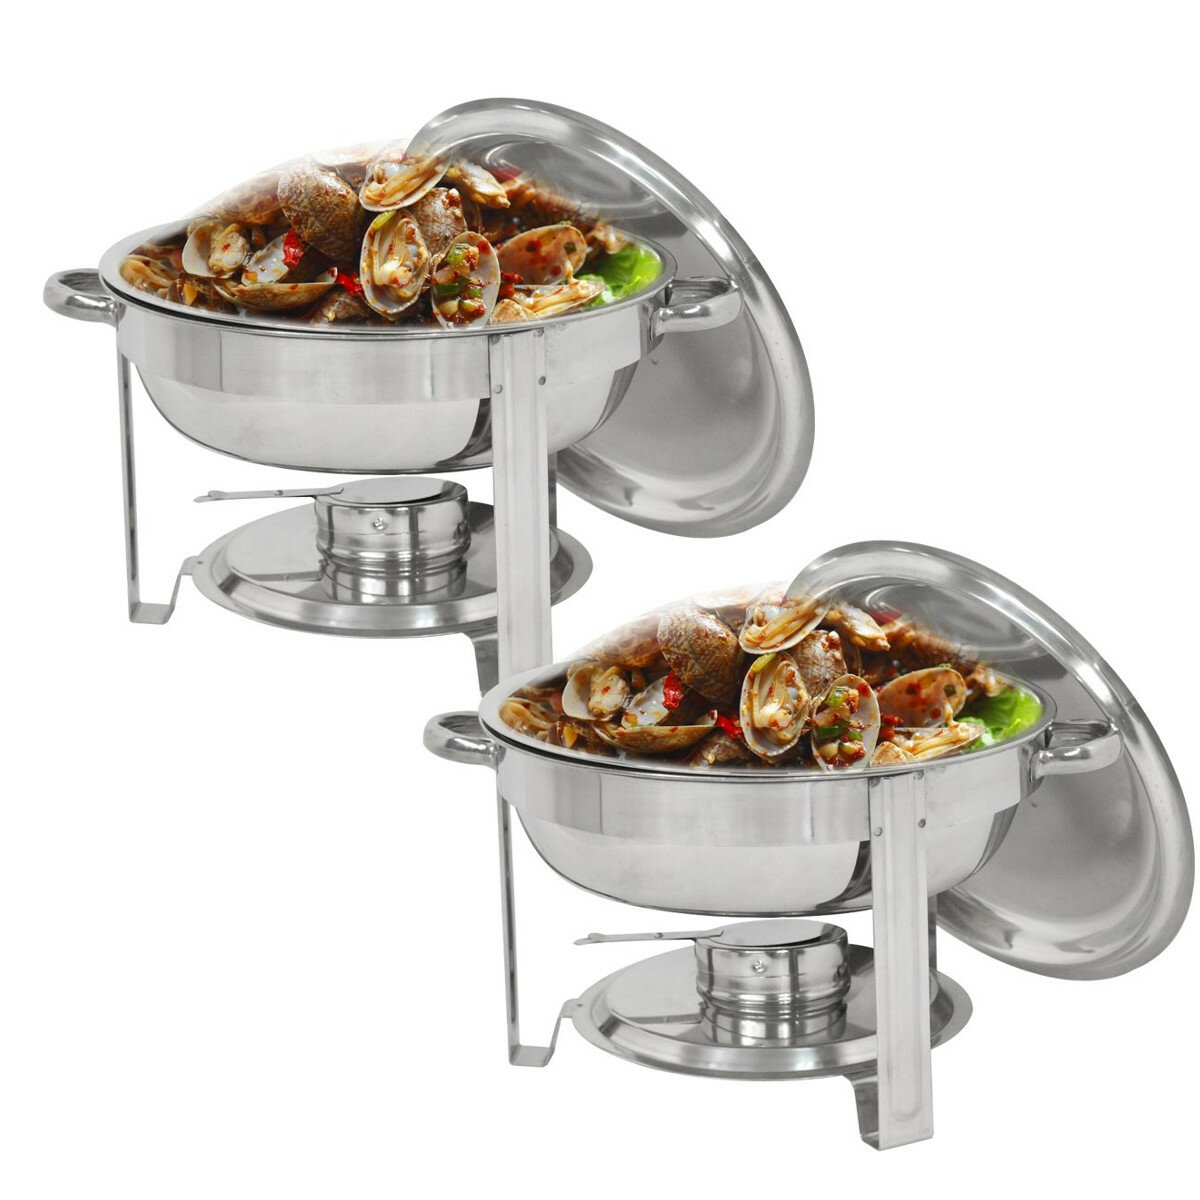 Ensemble de 2 pièces Tooca en acier inoxydable pour salle à manger : cuisinière et 2 casseroles de 4 litres chacune.